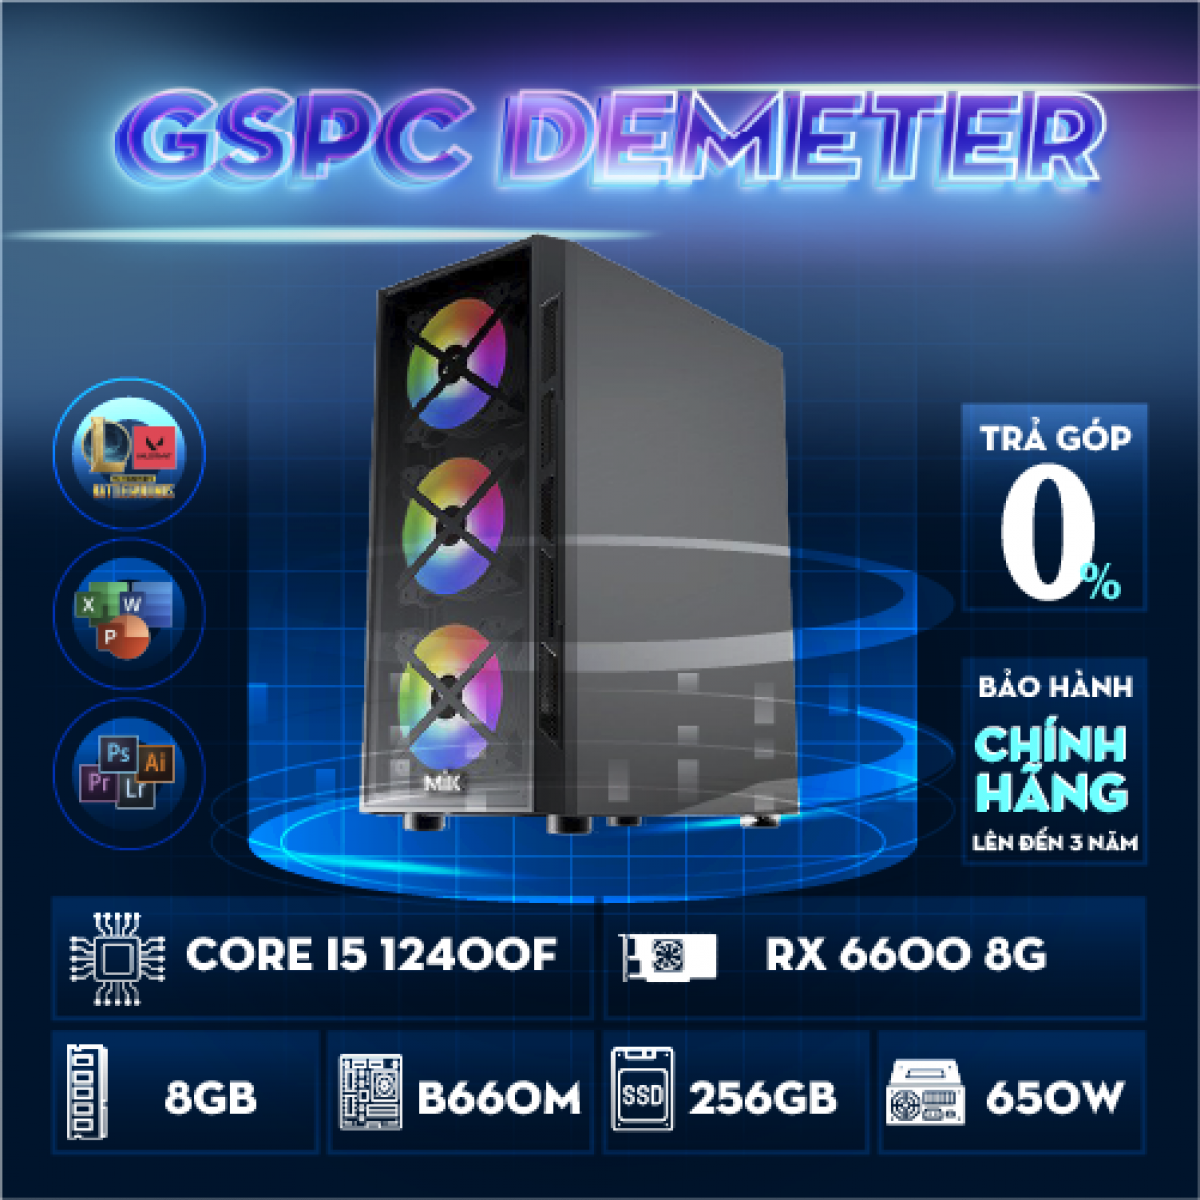 GSPC Demeter (i5 12400f - B660M - 8GB - RX 6600 - 256GB)